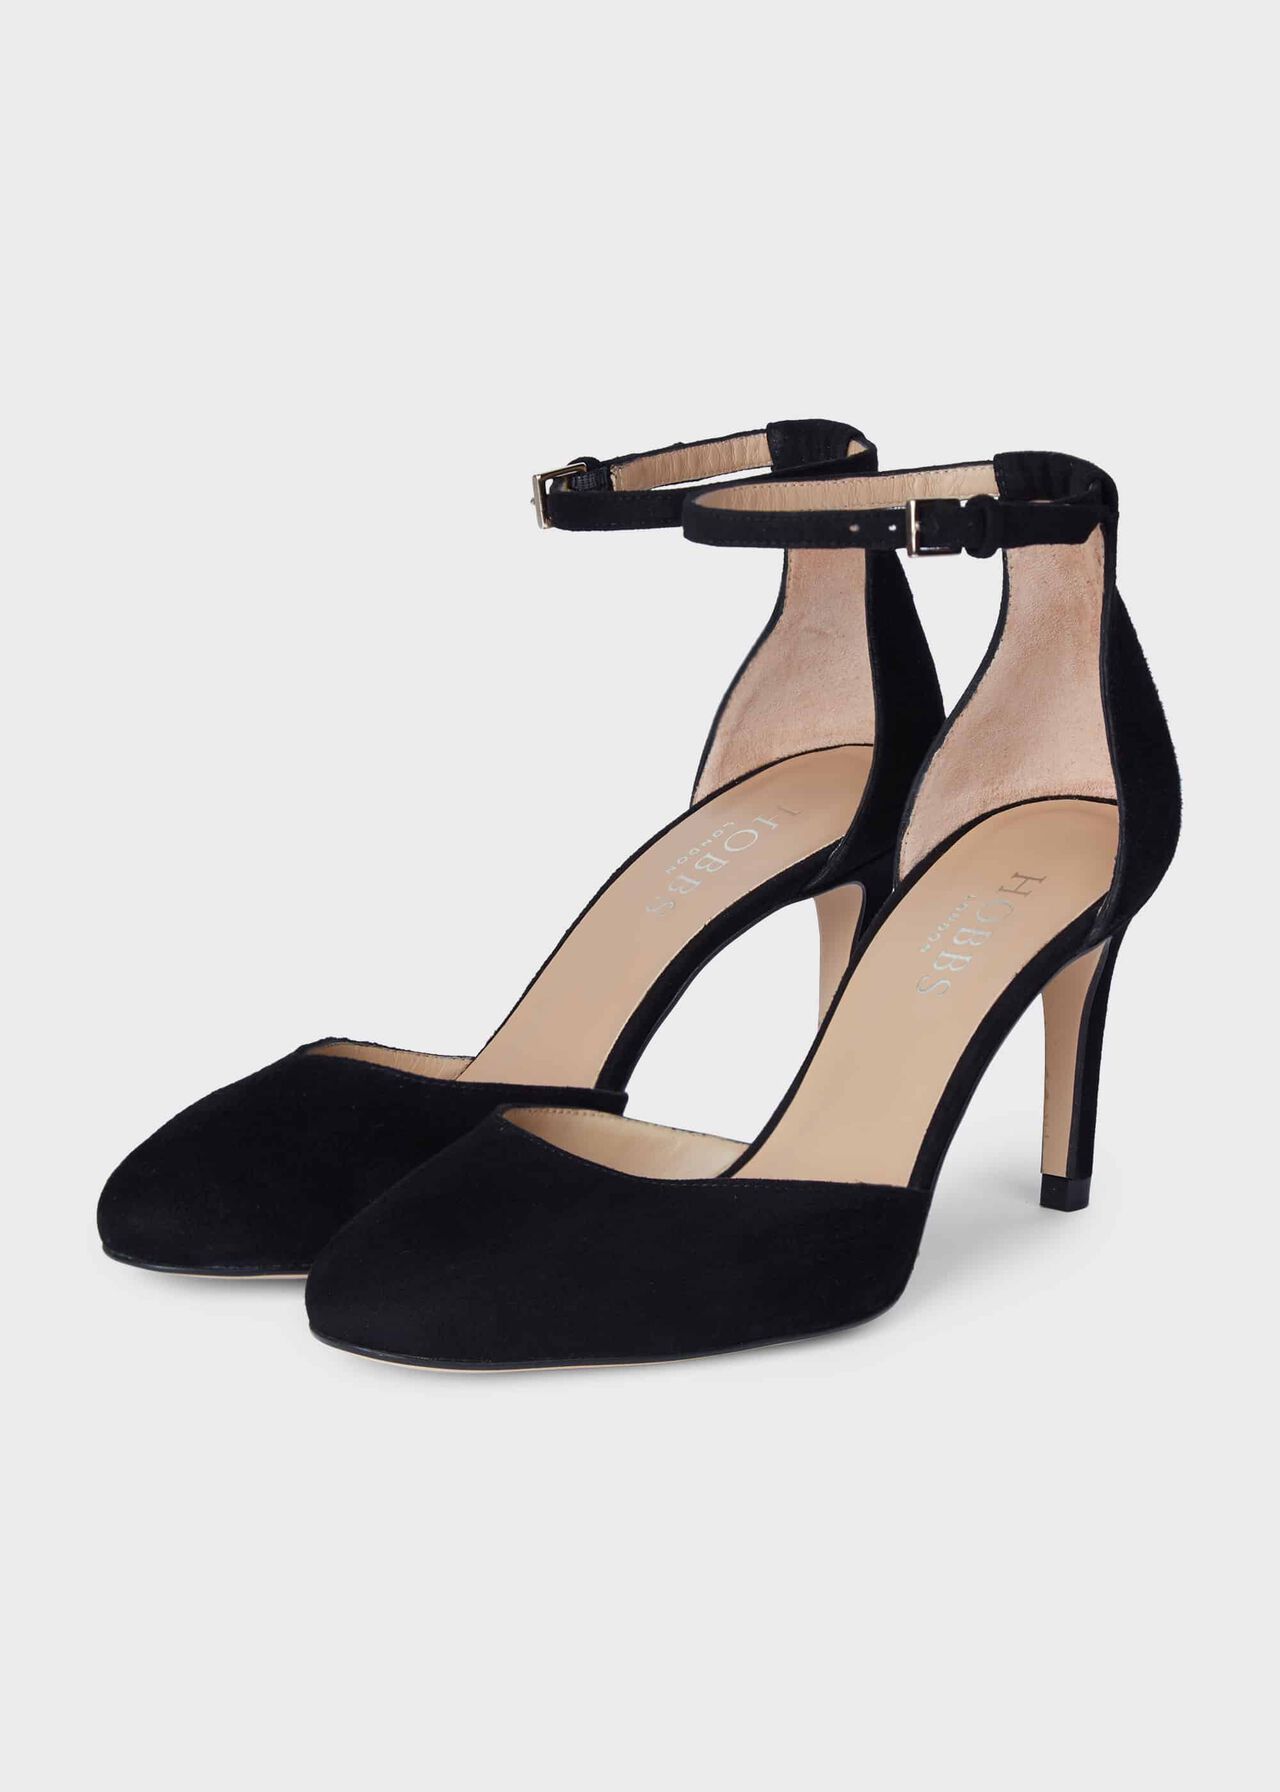 Elliya Suede Court Shoes, Black, hi-res